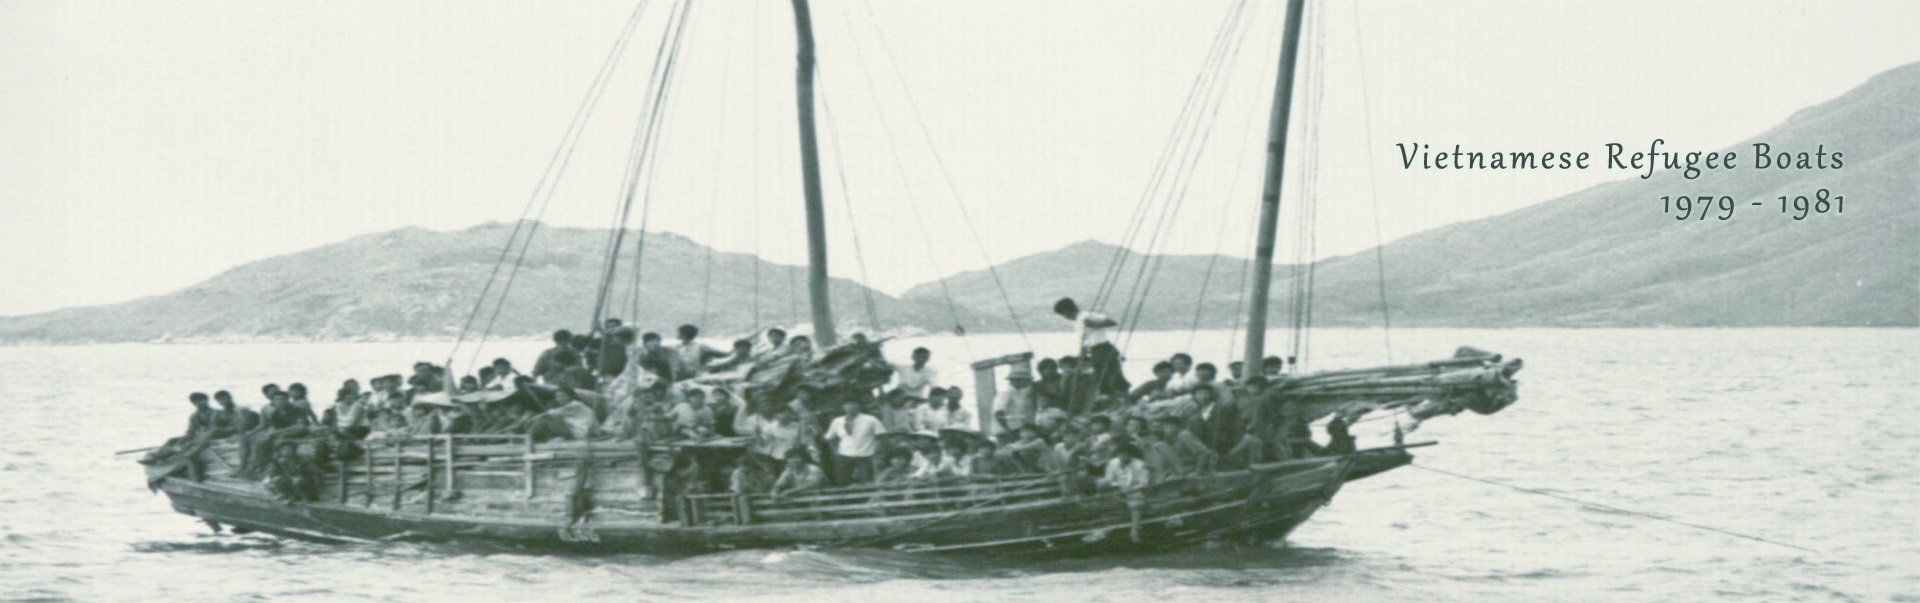 Vietnamese Refugee Boats, 1979-1981